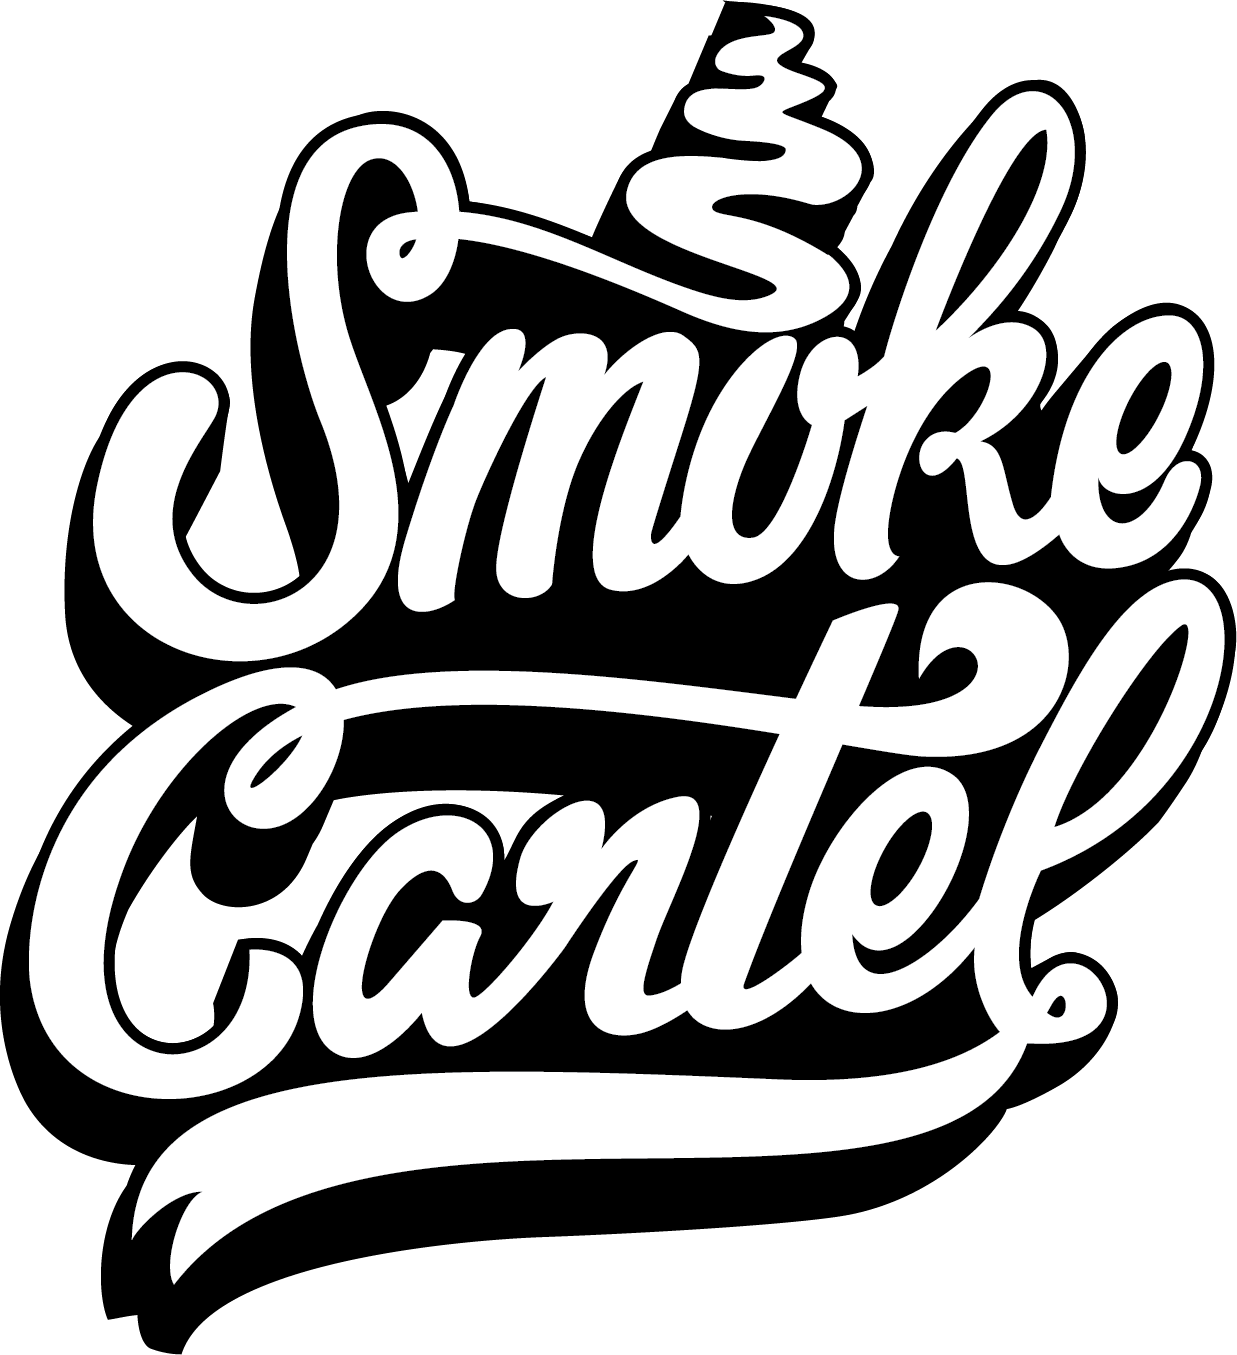 www.smokecartel.com